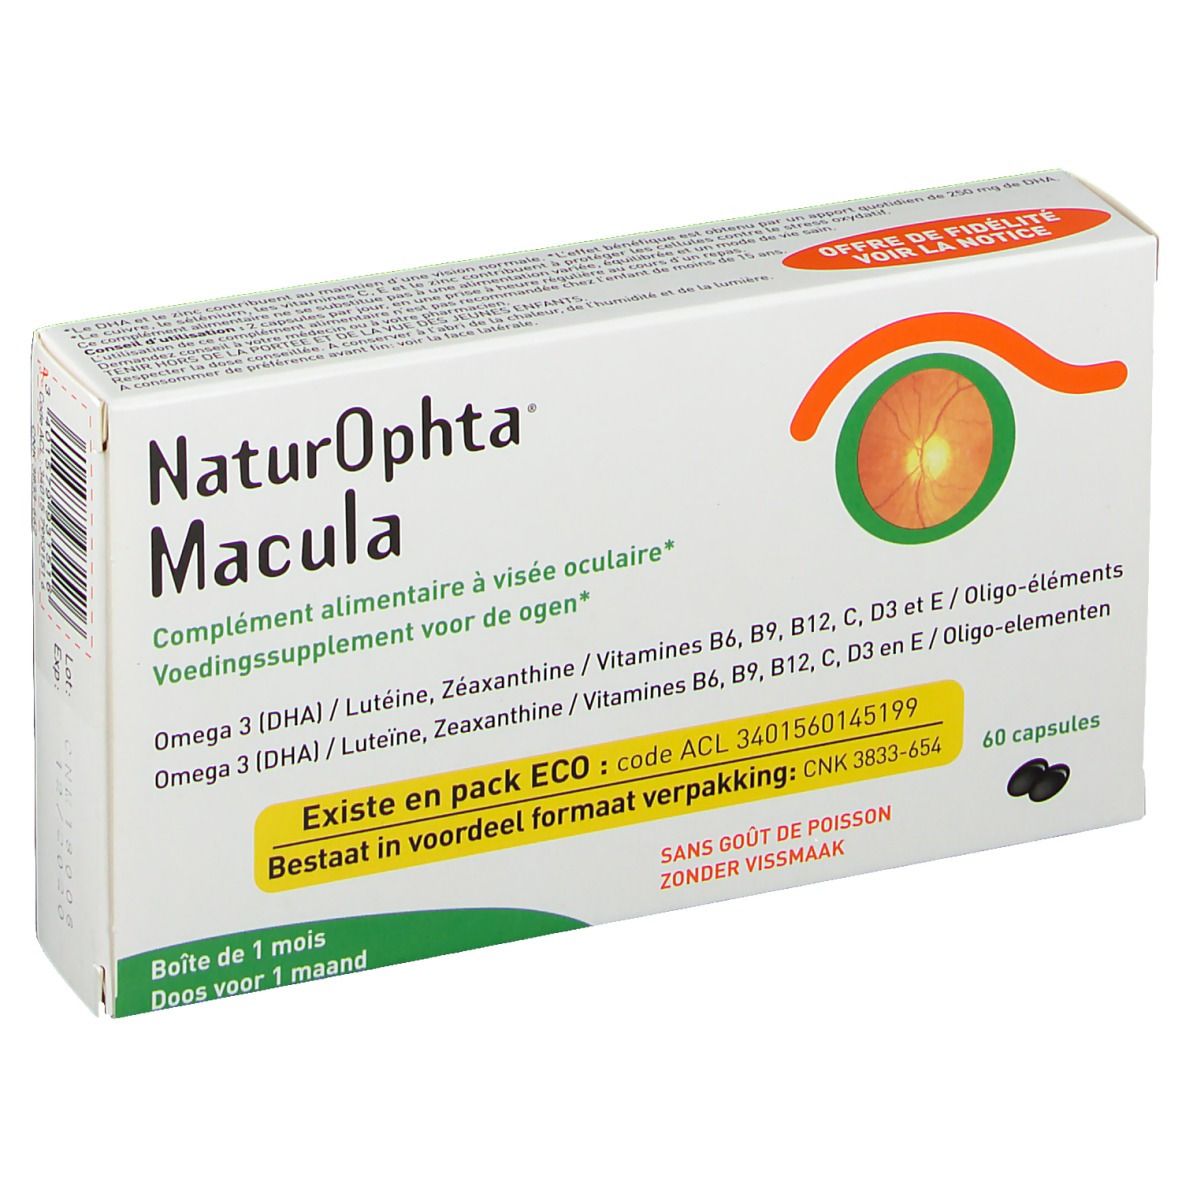 Image of Horus Pharma NaturOphta macula